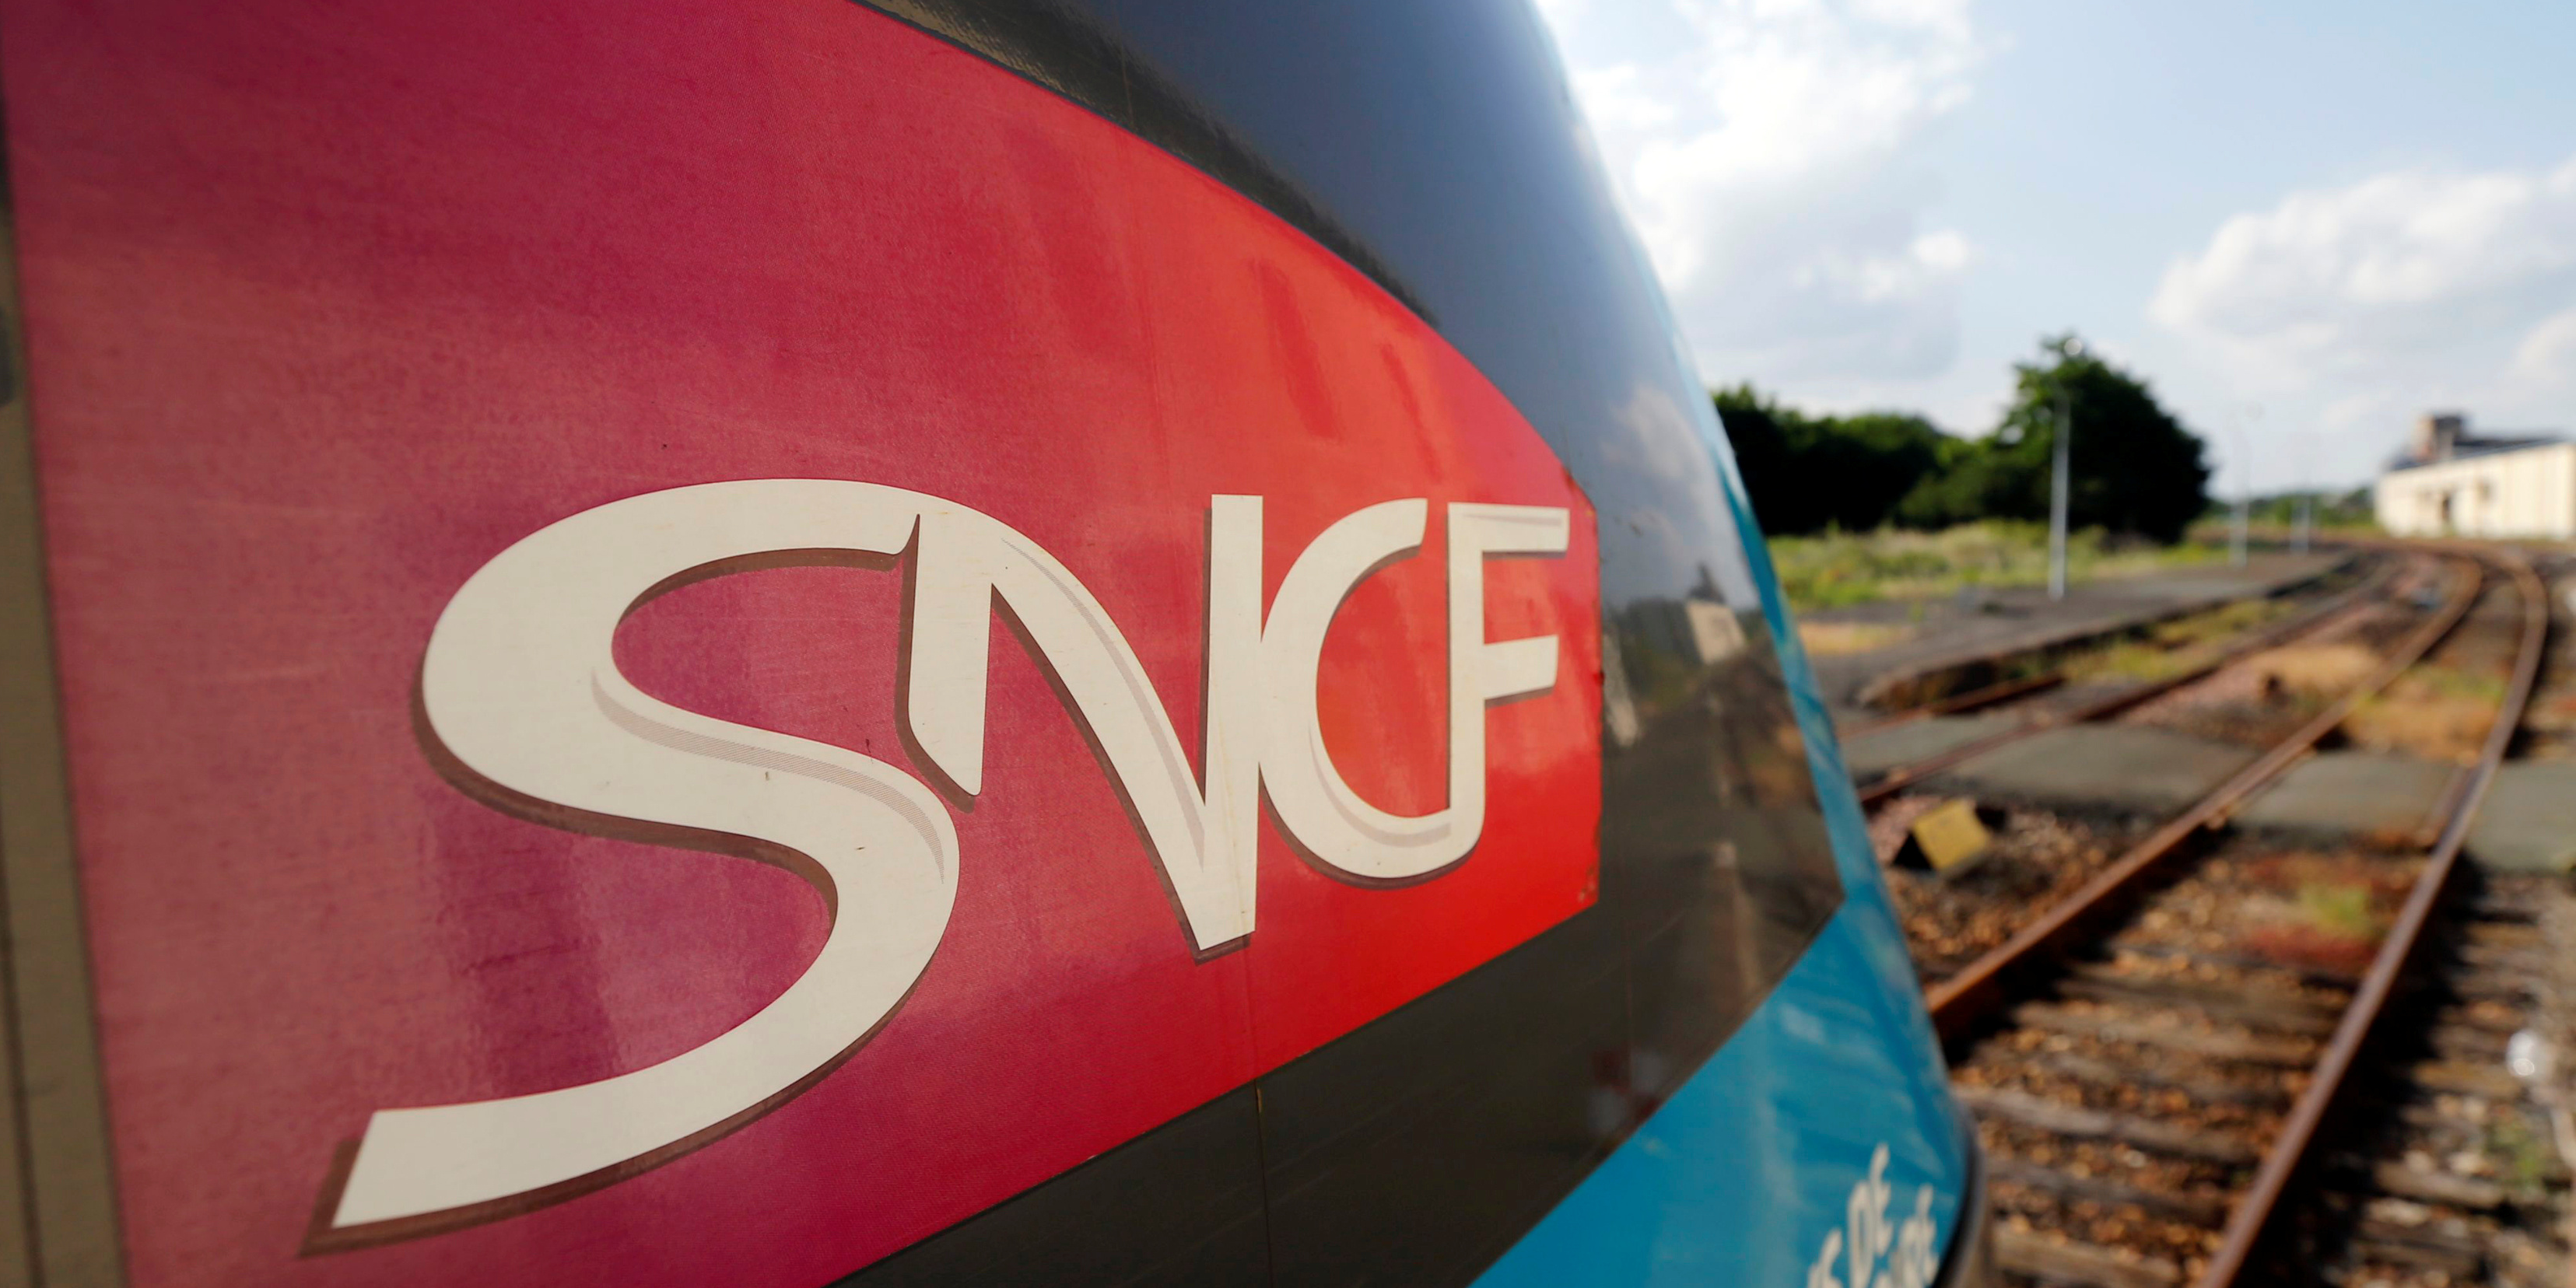 Pour ses besoins en électricité, la SNCF fait le pari de l'éolien avec CNR